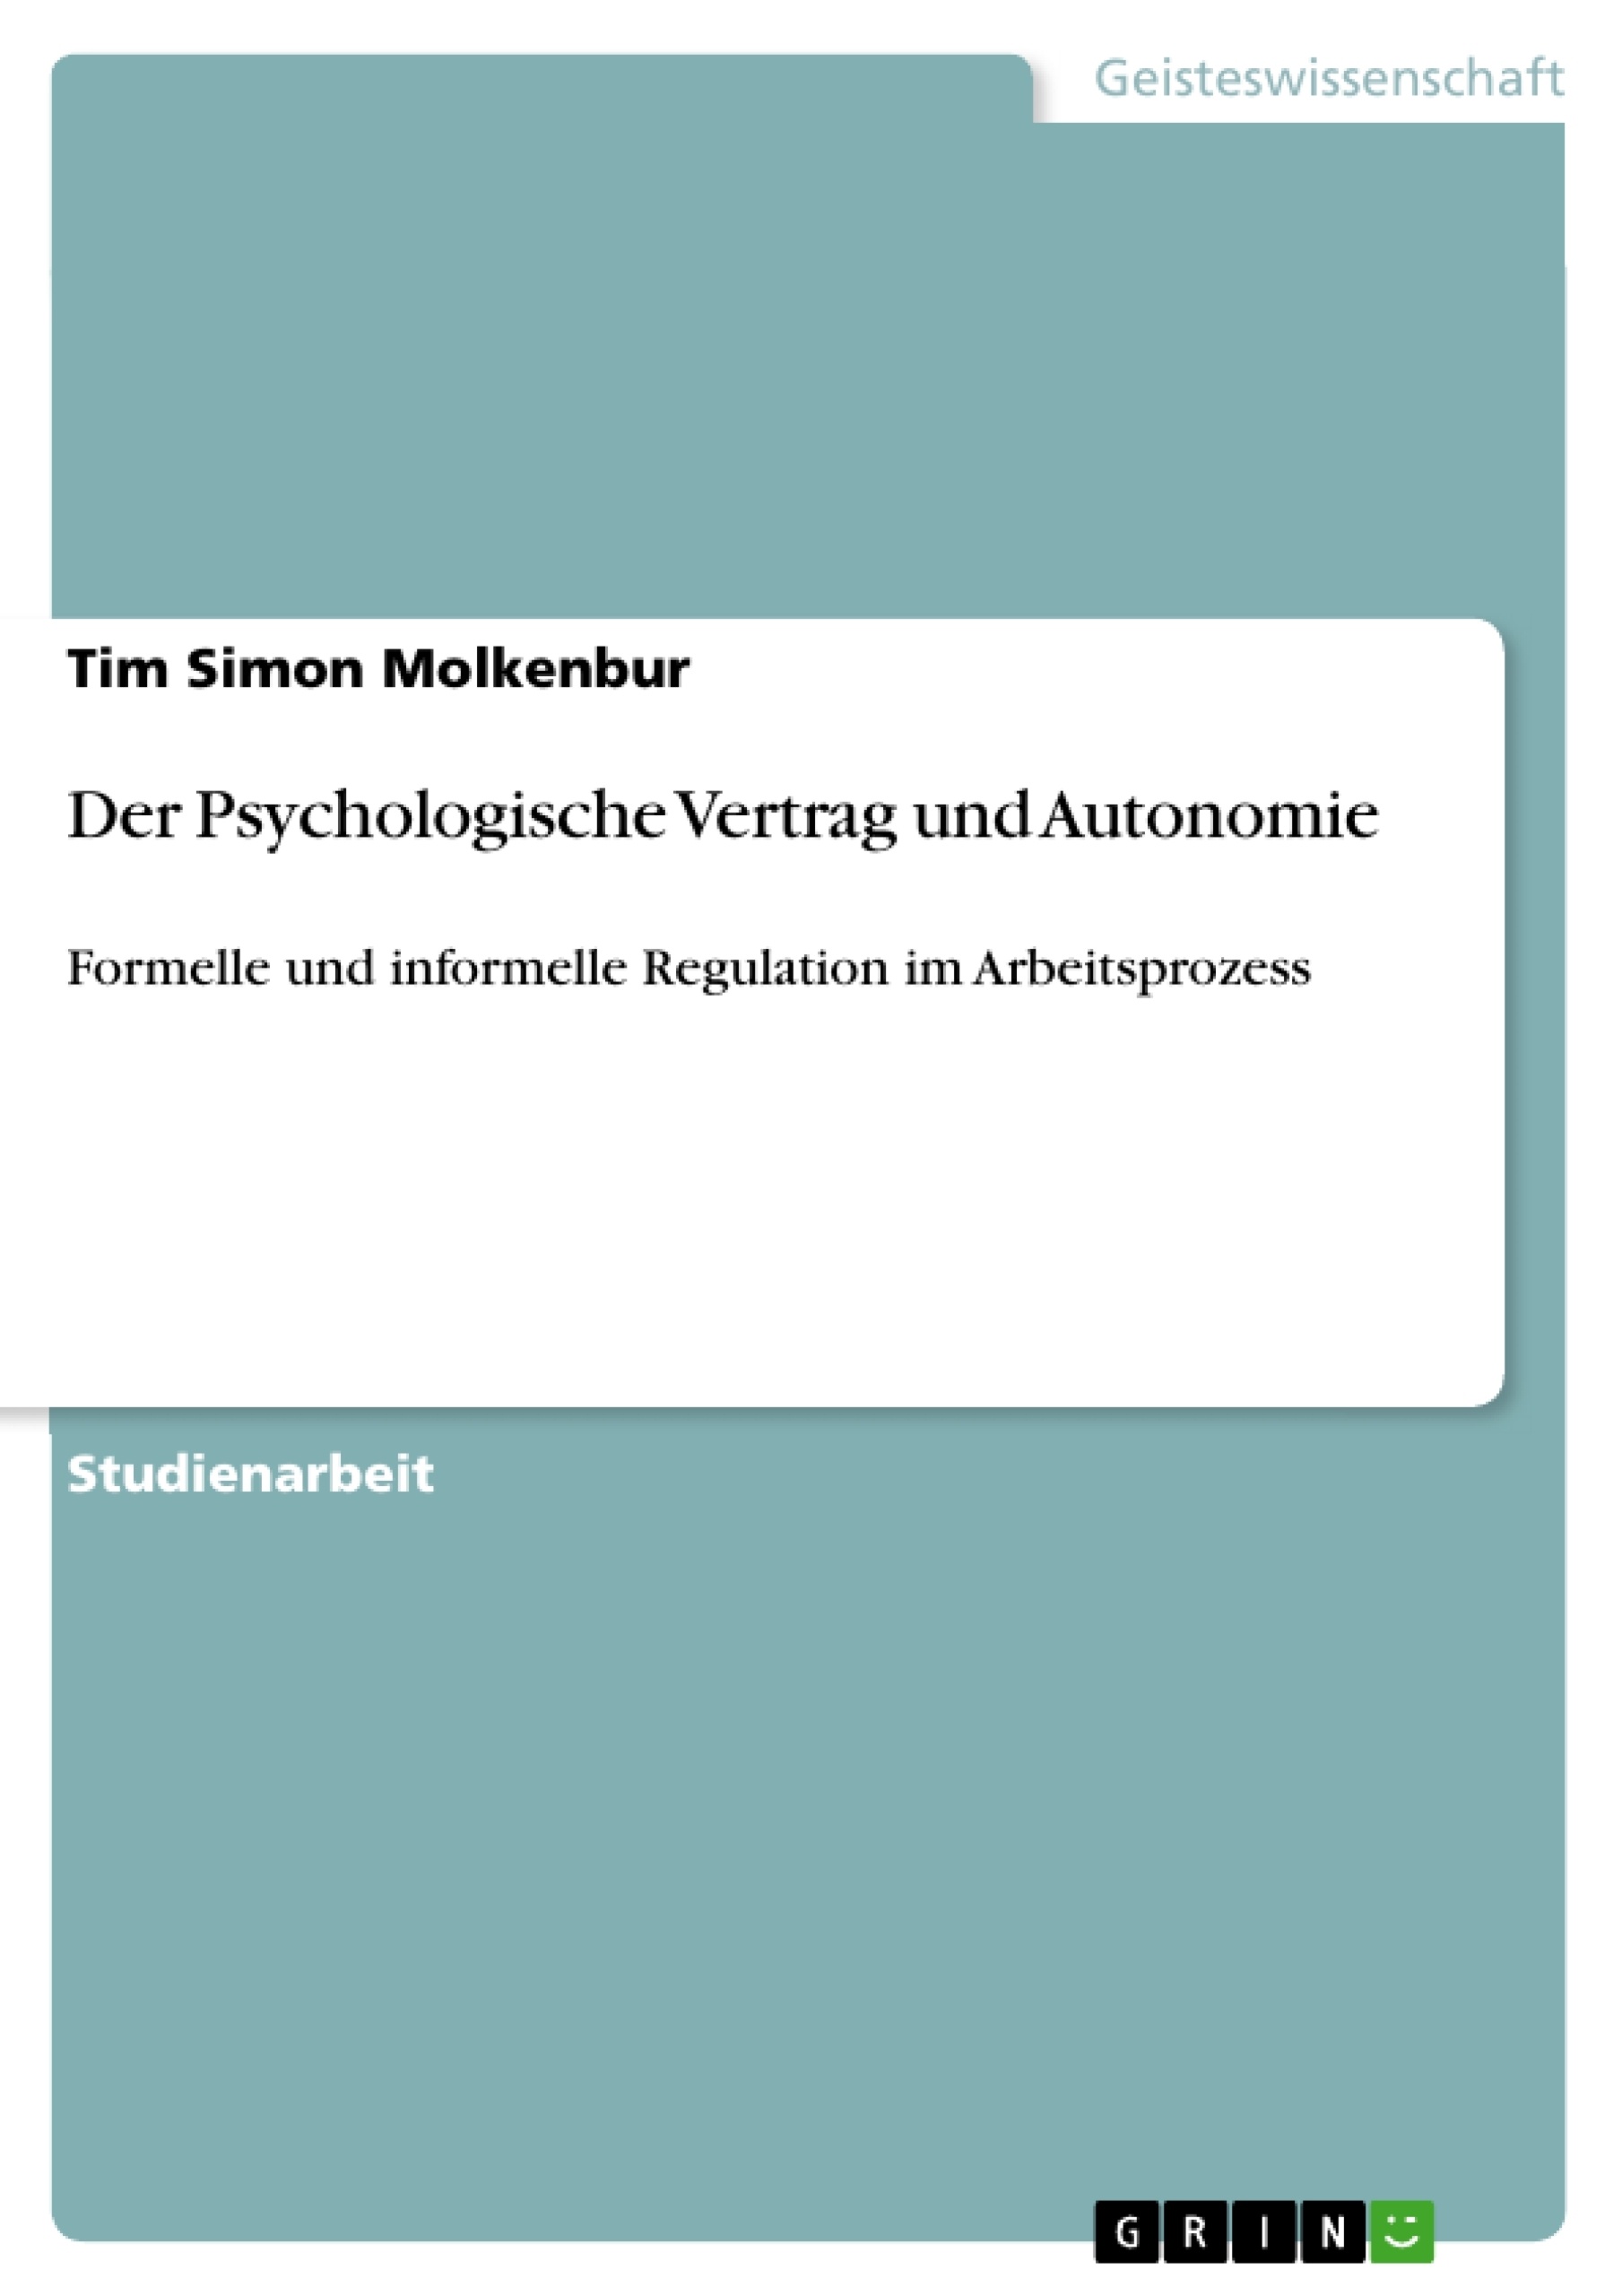 Title: Der Psychologische Vertrag und Autonomie